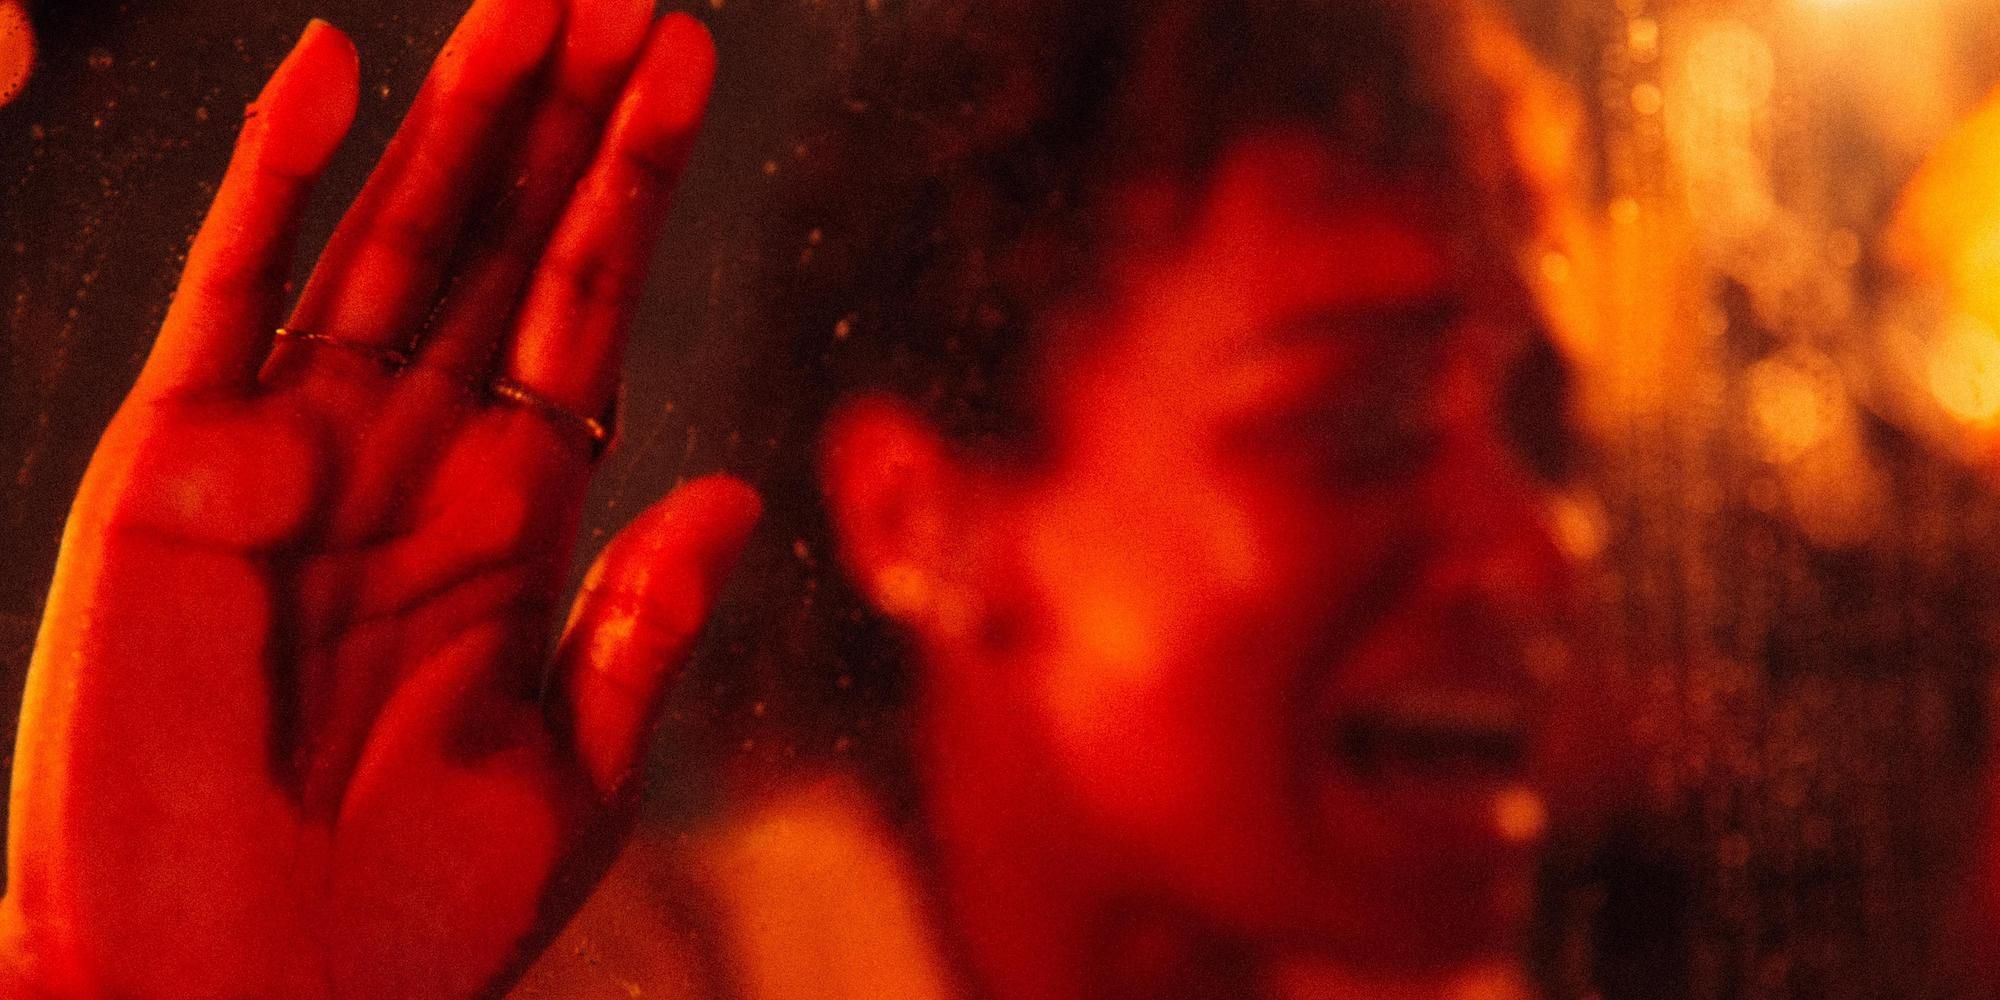 Revisión de Talk To Me: la película de terror ofrece sustos escalofriantes y desconcertantes [SXSW]